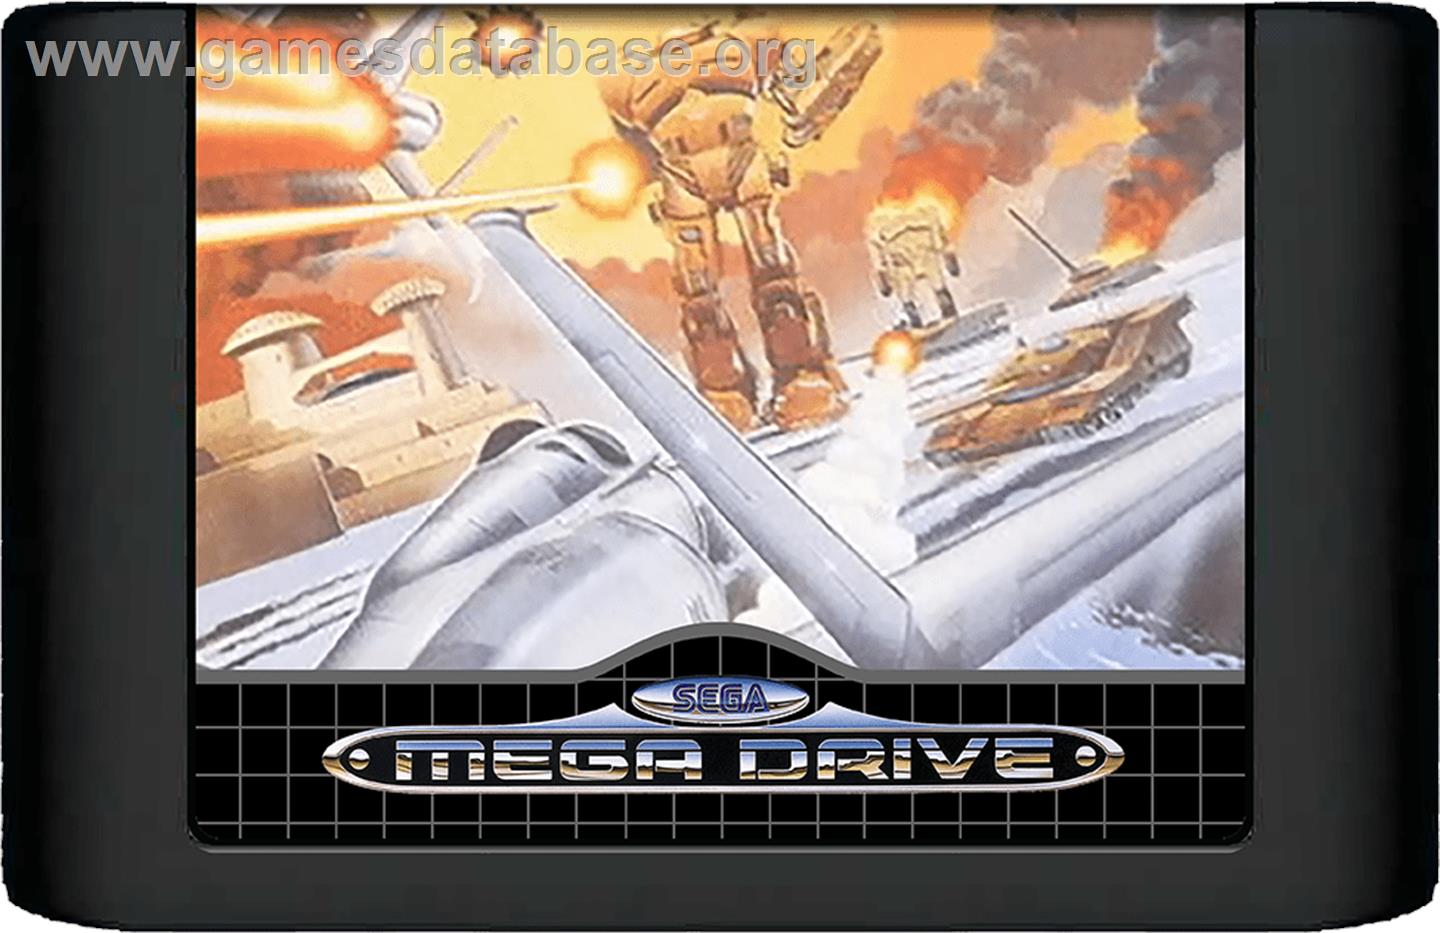 Herzog Zwei - Sega Genesis - Artwork - Cartridge